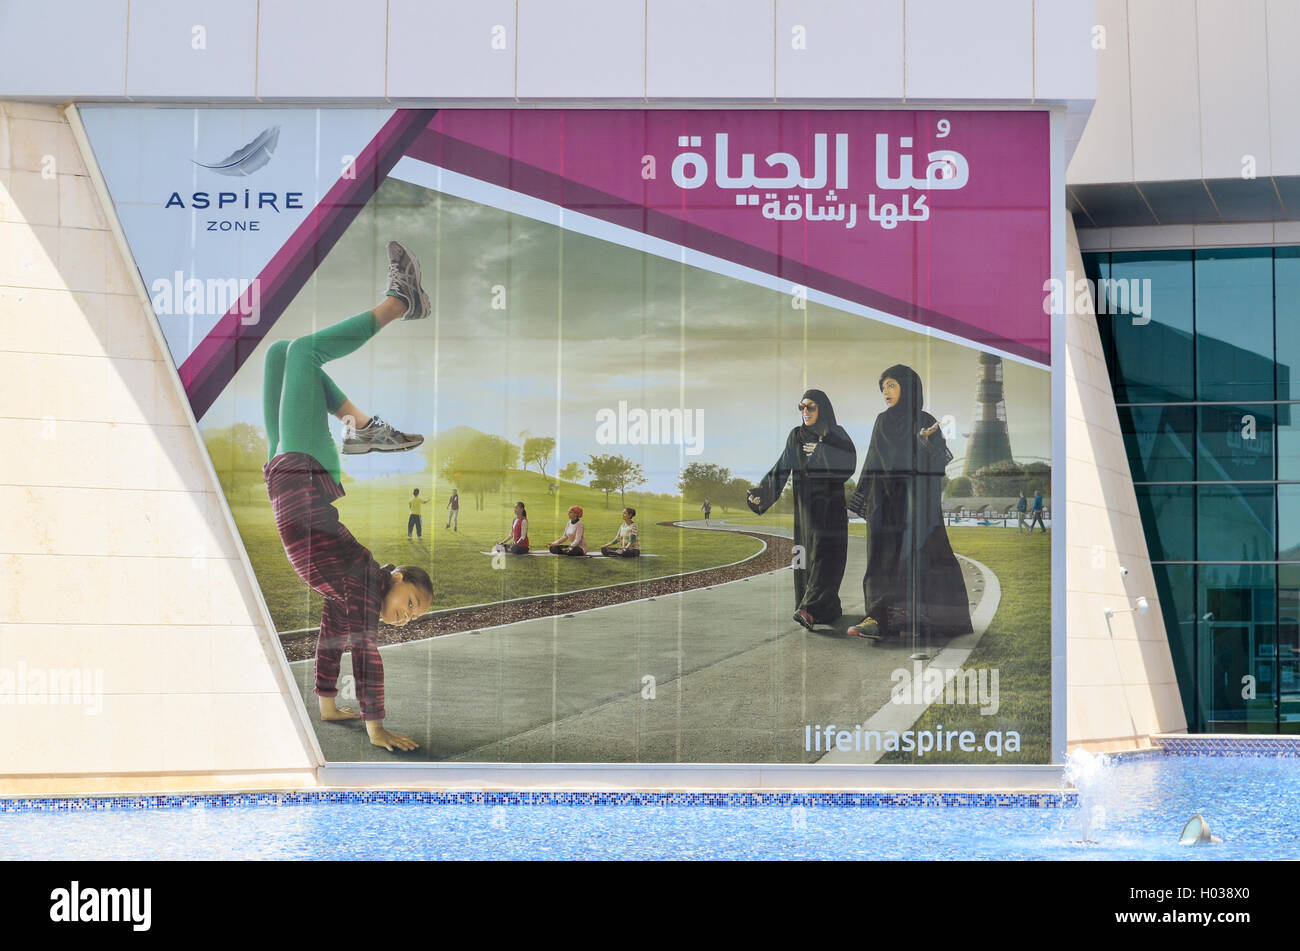 Frauen gekleidet mit Abayha auf eine Anzeige im Aspire Zone von Doha, Katar Stockfoto